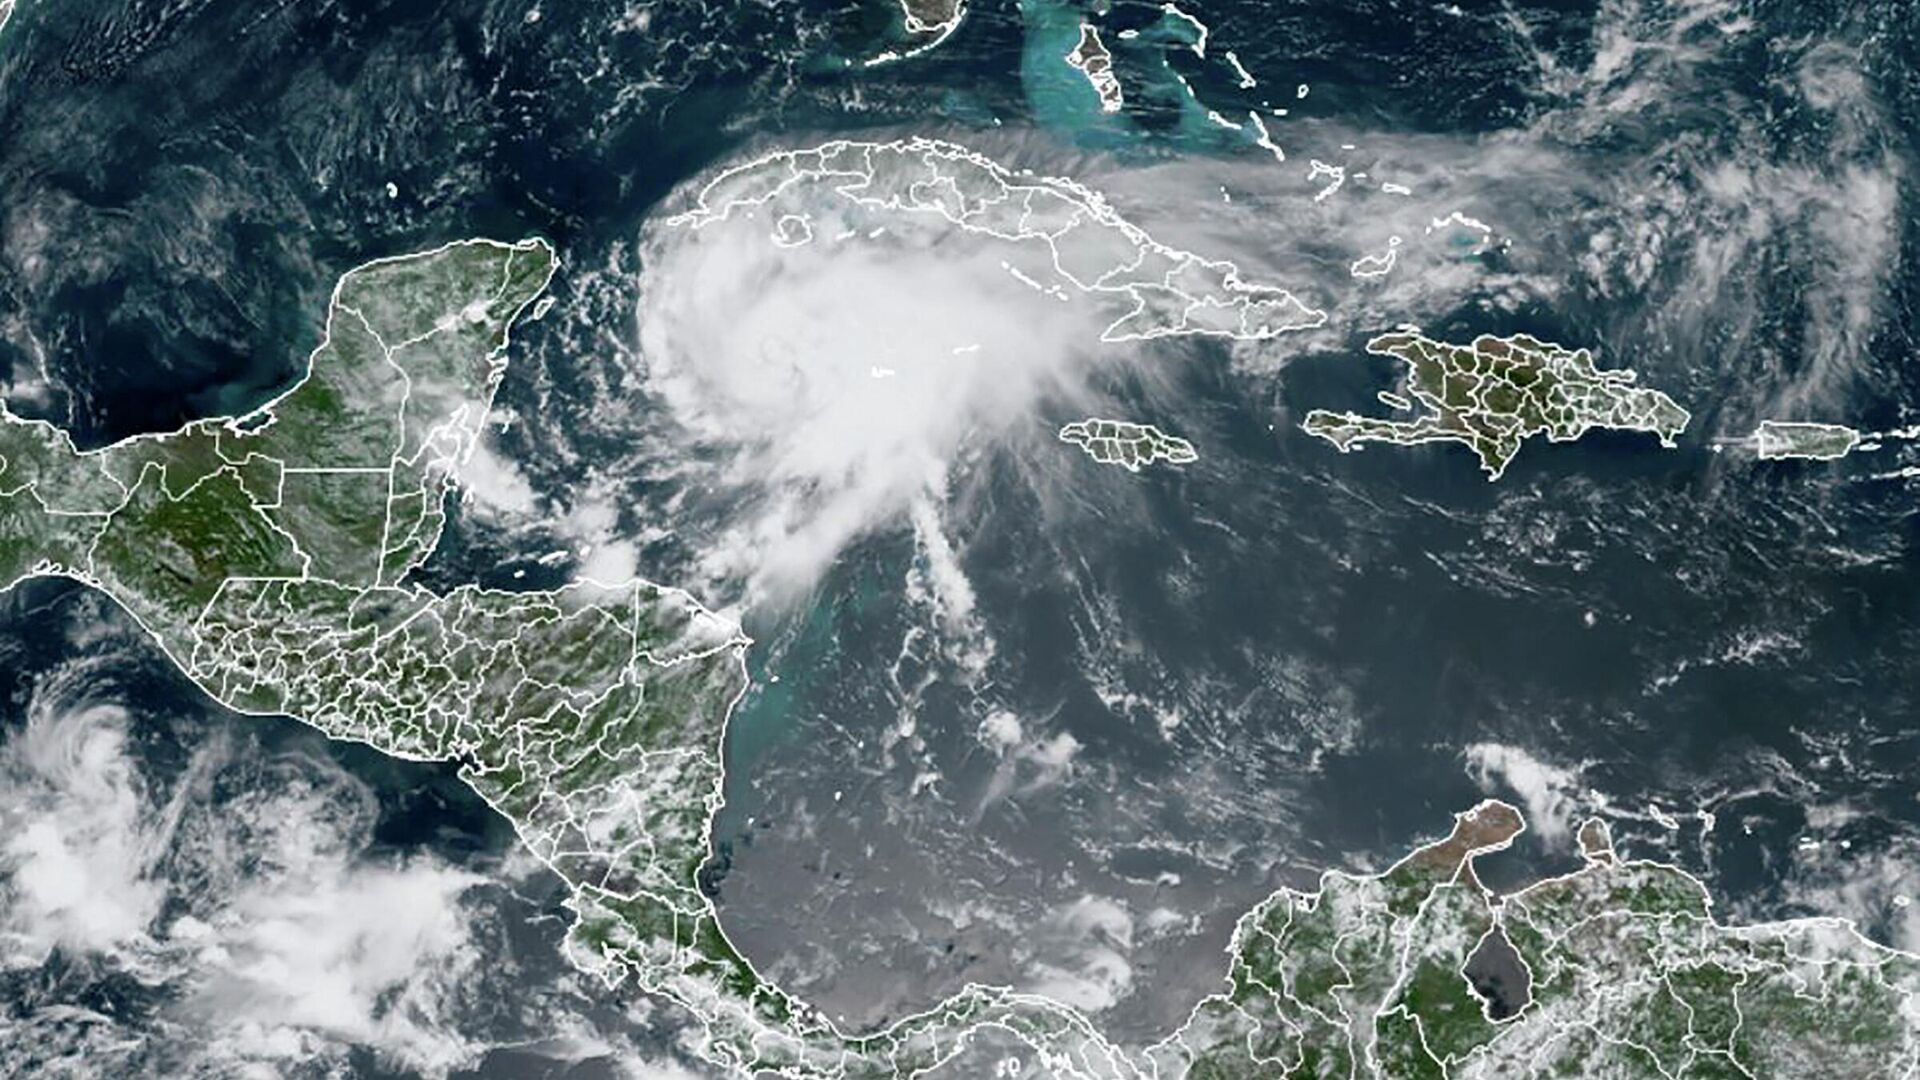 El huracán Grace se acerca a las costas de la península Yucatán, México - Sputnik Mundo, 1920, 19.08.2021